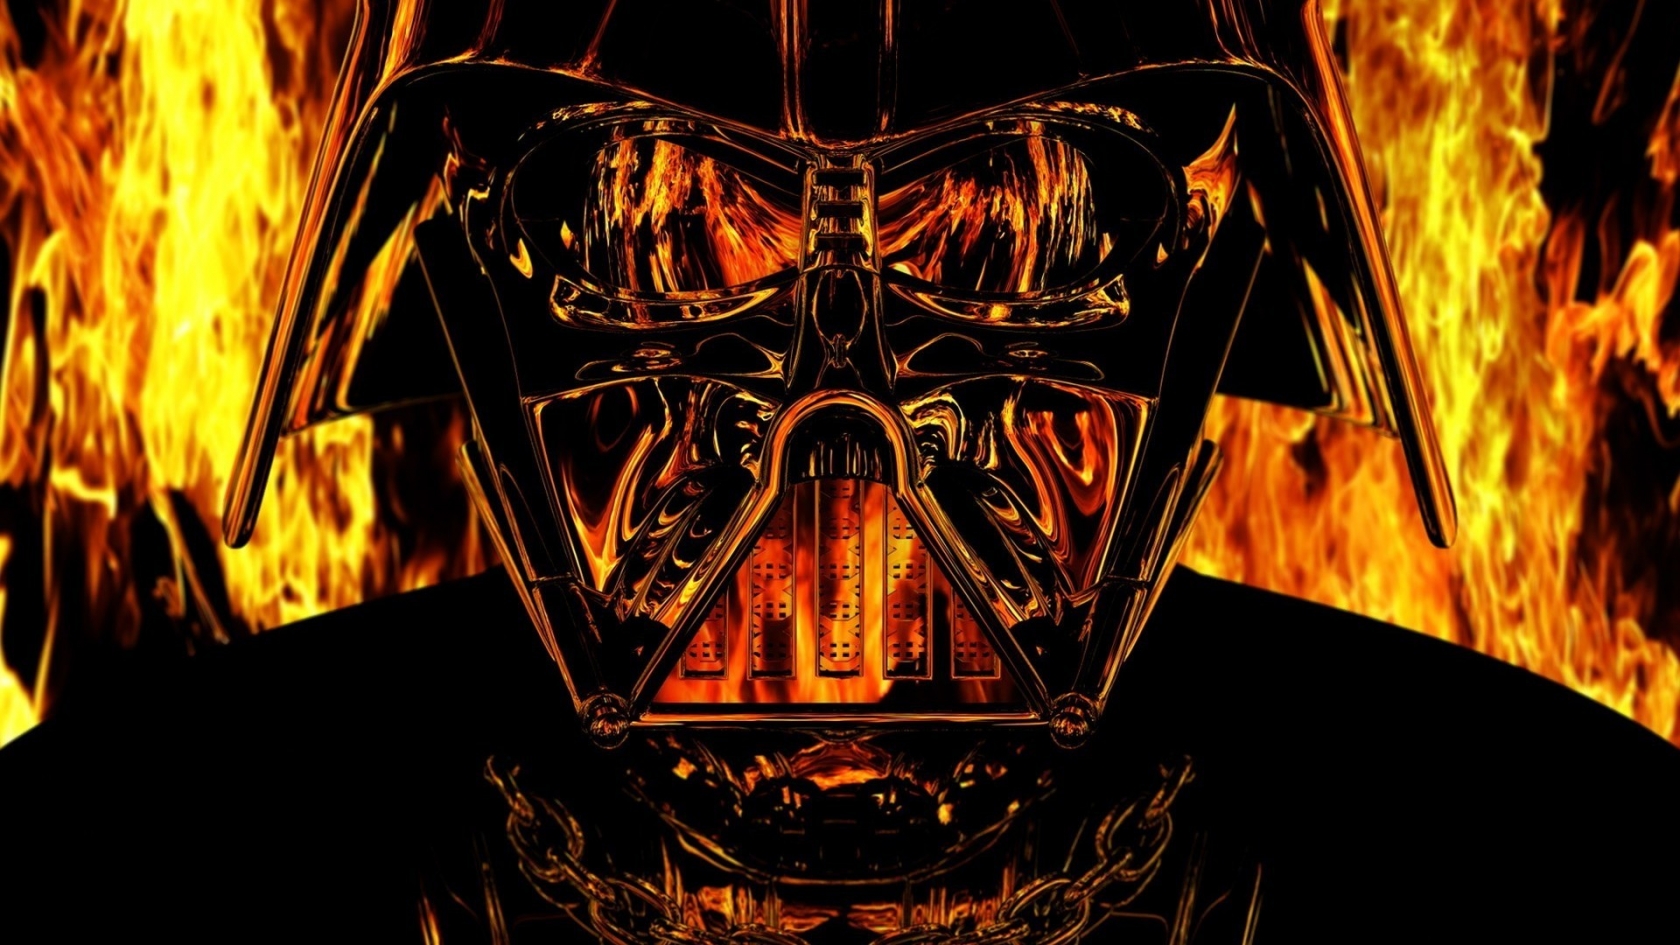 Darth Vader Star Wars for 1680 x 945 HDTV resolution